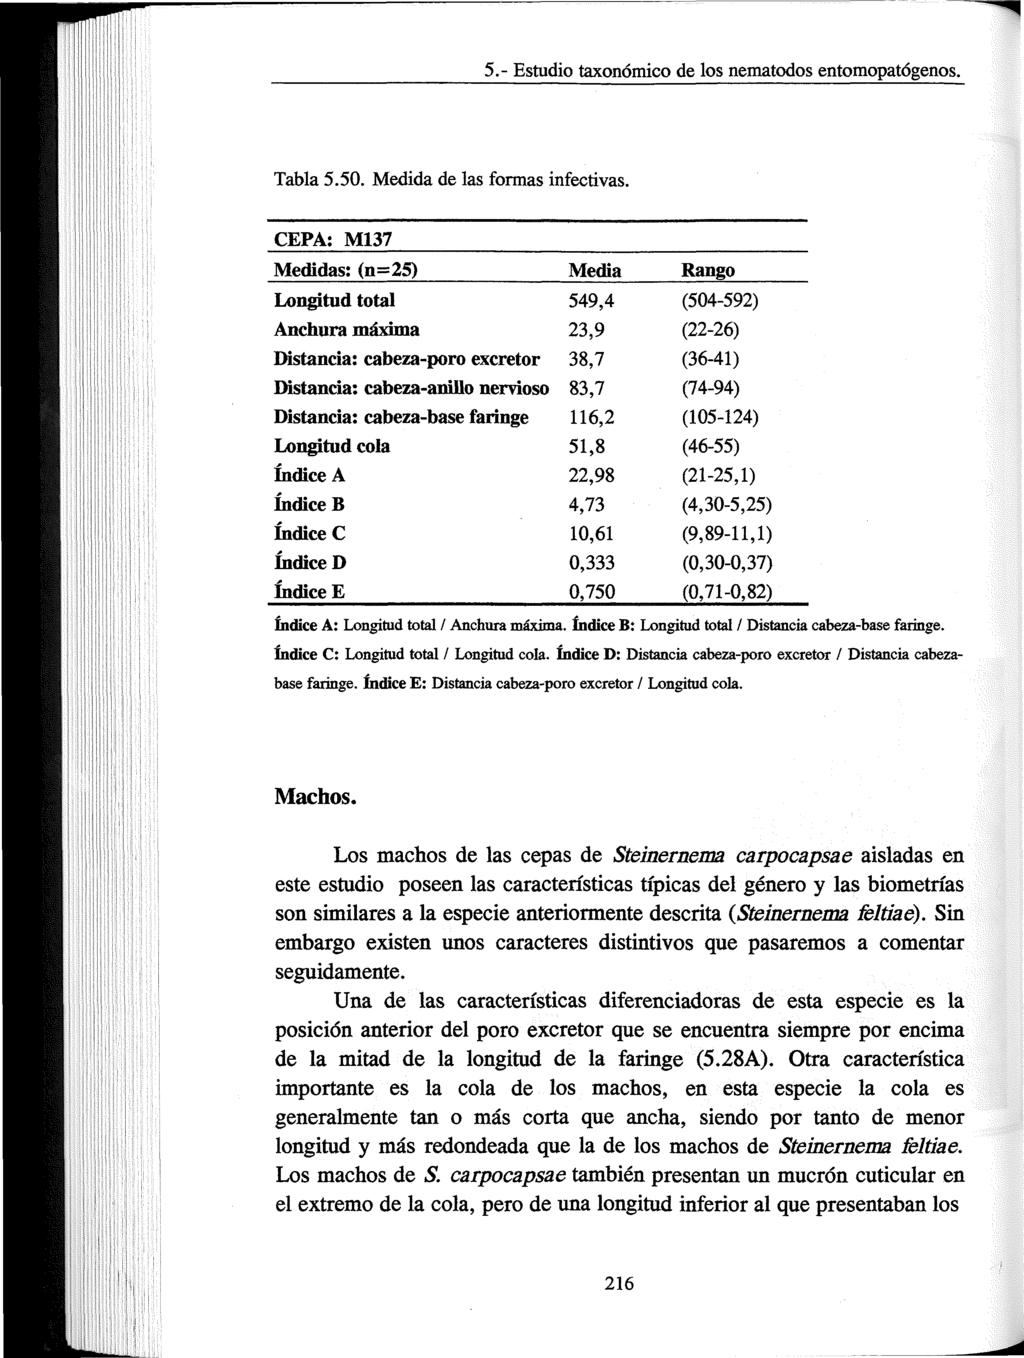 5.- Estudio taxonómico de los nematodos entomopatógenos. Tabla 5.50. Medida de las formas infectivas.